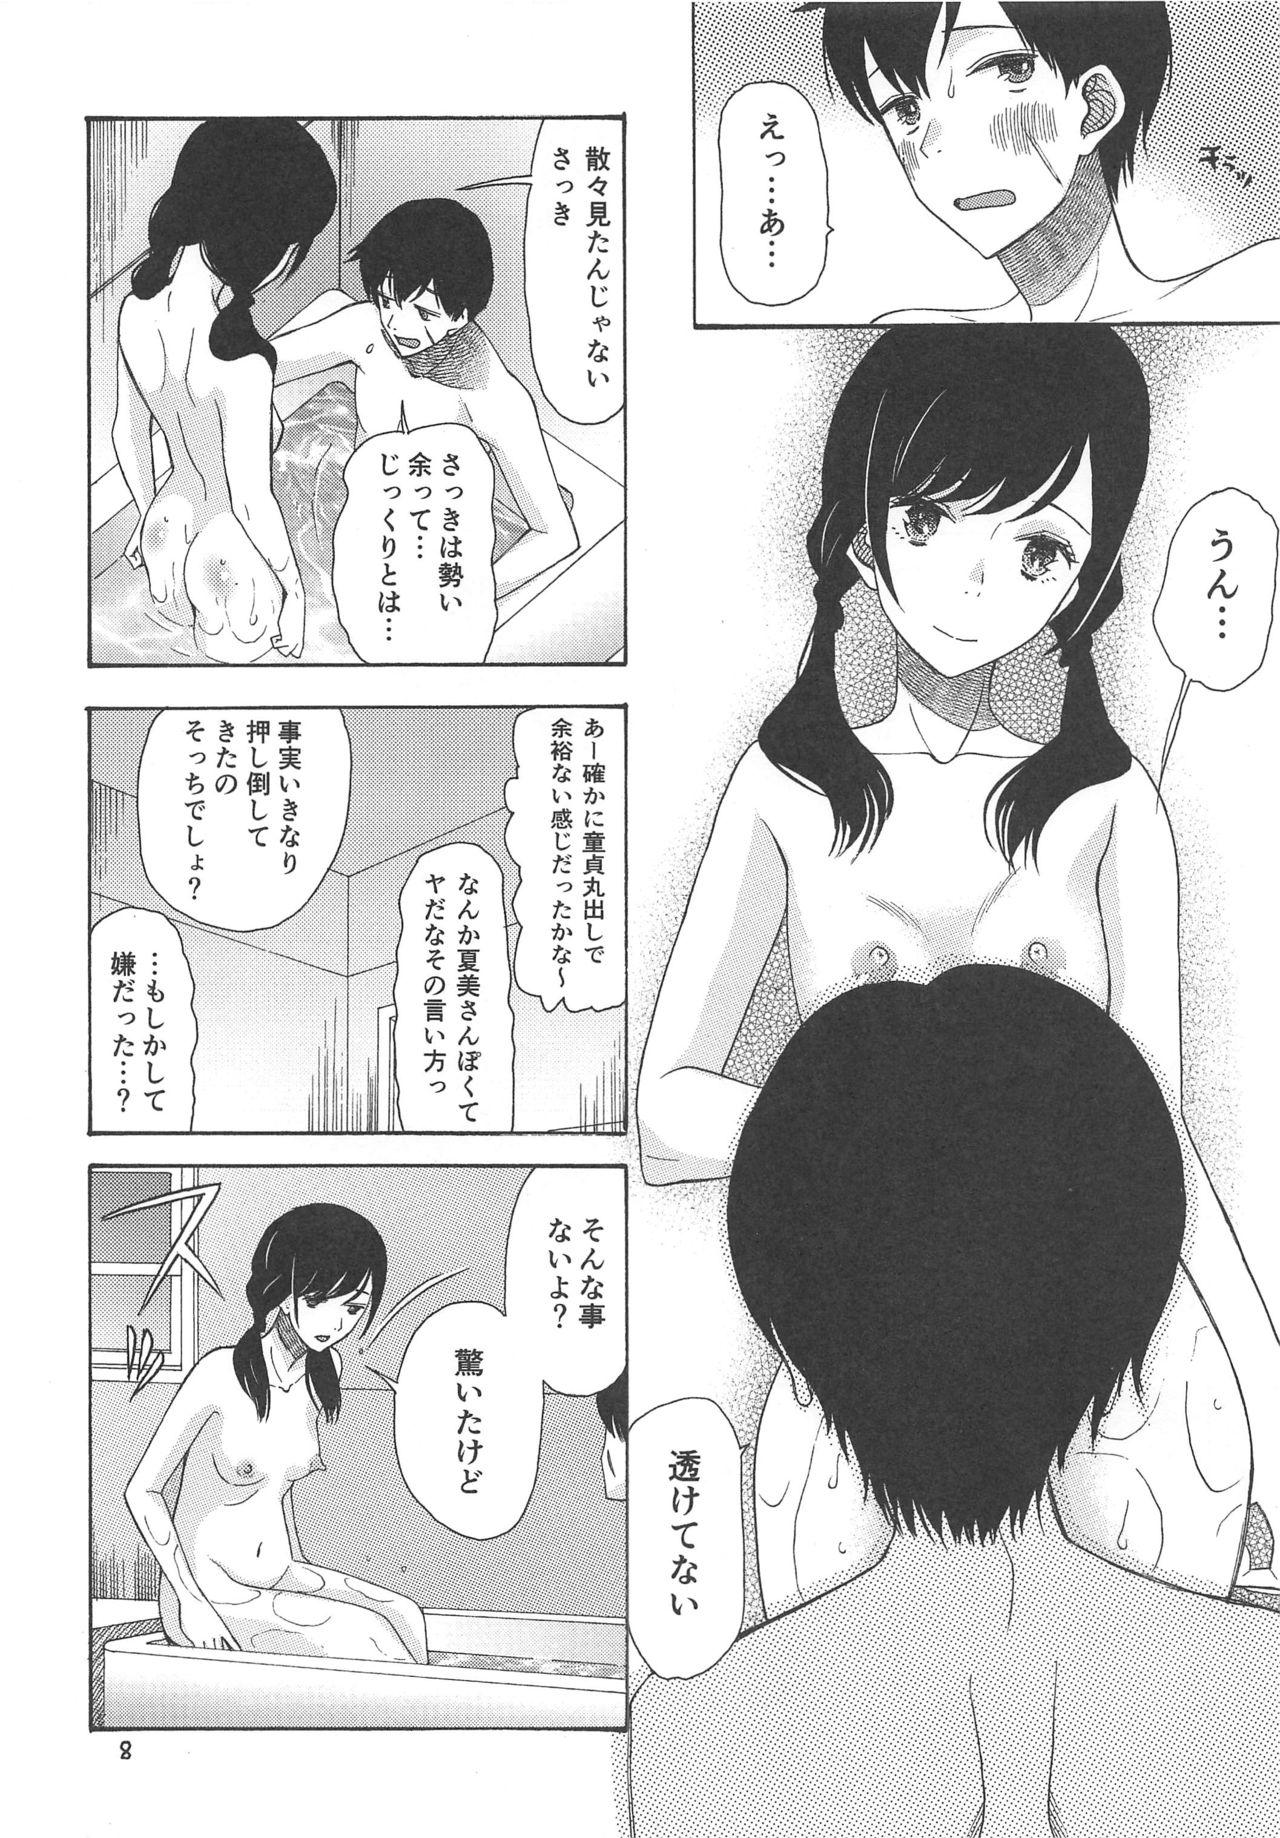 Menage Haruumi Akiyama Kimi Egao - Tenki no ko Oldman - Page 7